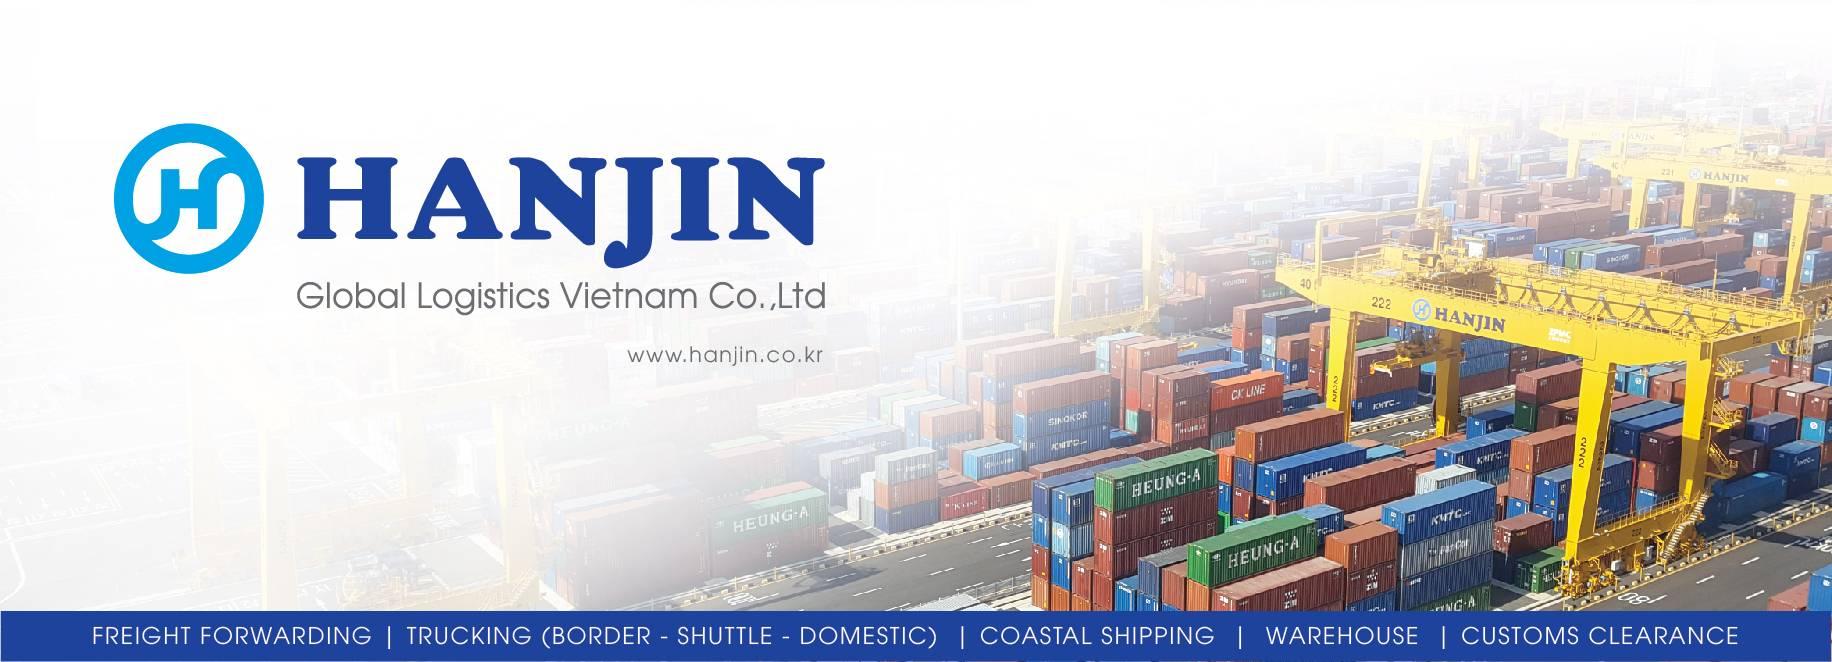 HGLV (Hanjin Global Logistics Vietnam Co., Ltd) tuyển dụng - Tìm việc mới nhất, lương thưởng hấp dẫn.